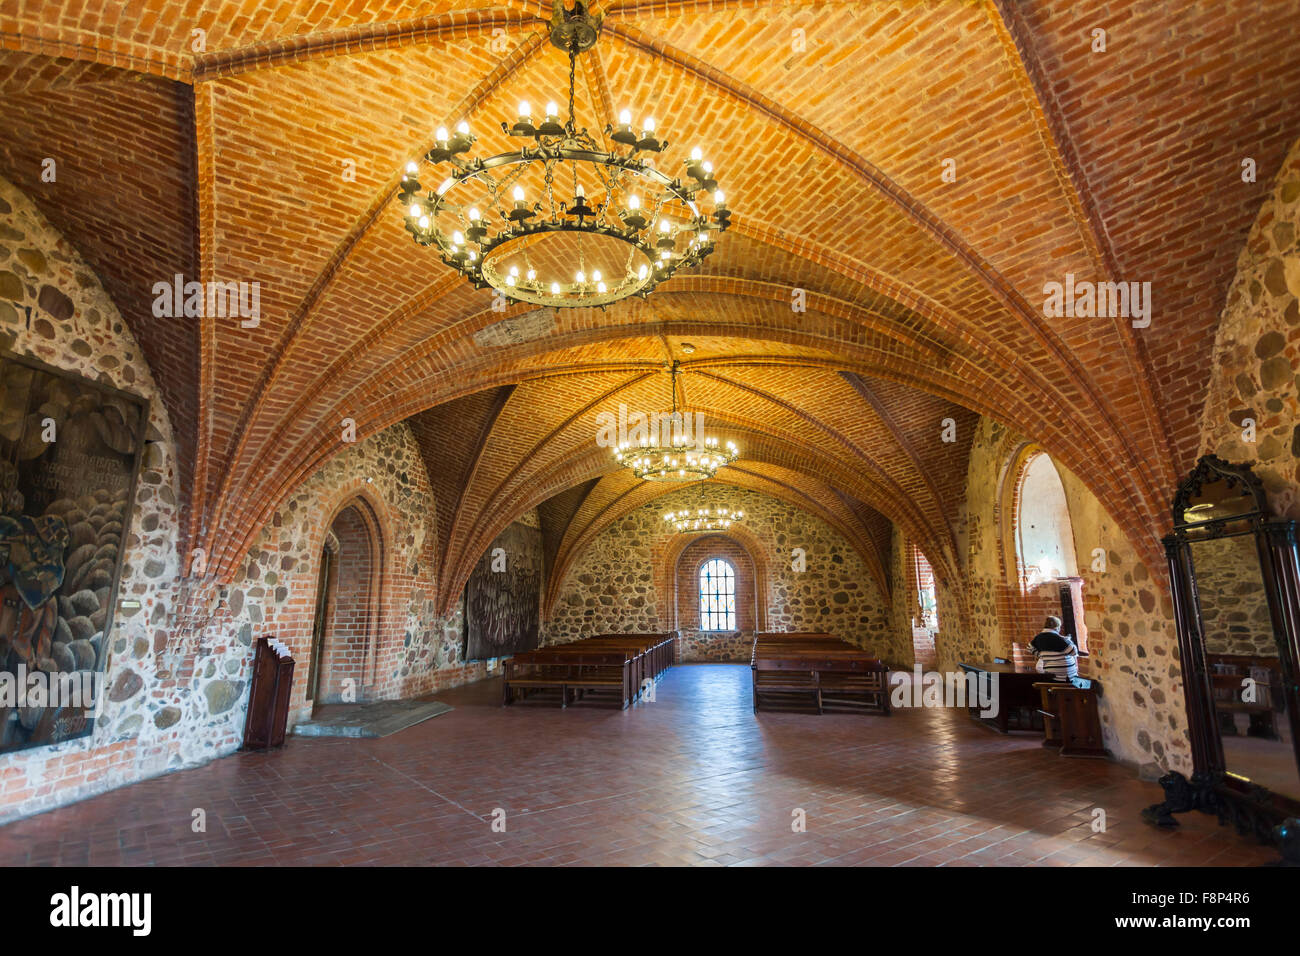 Plafond voûté en briques à l'intérieur du château de Trakai, du lac Galve, de Trakai, une ville historique et station balnéaire en Lituanie, en Europe de l'est Banque D'Images